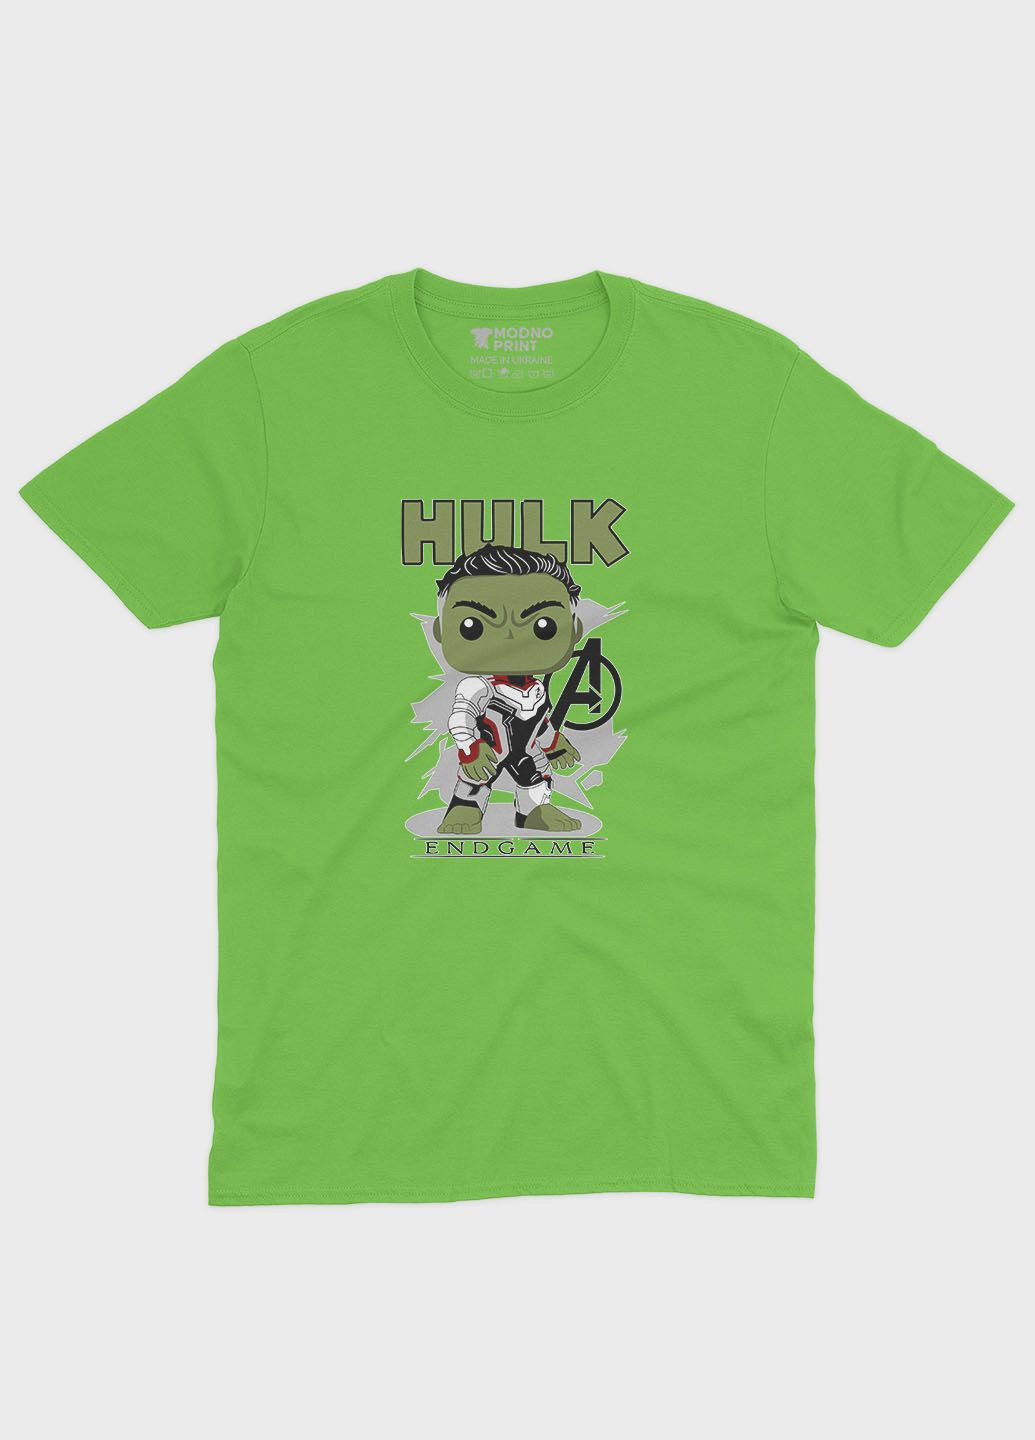 Салатова демісезонна футболка для хлопчика з принтом супергероя - халк (ts001-1-kiw-006-018-005-b) Modno